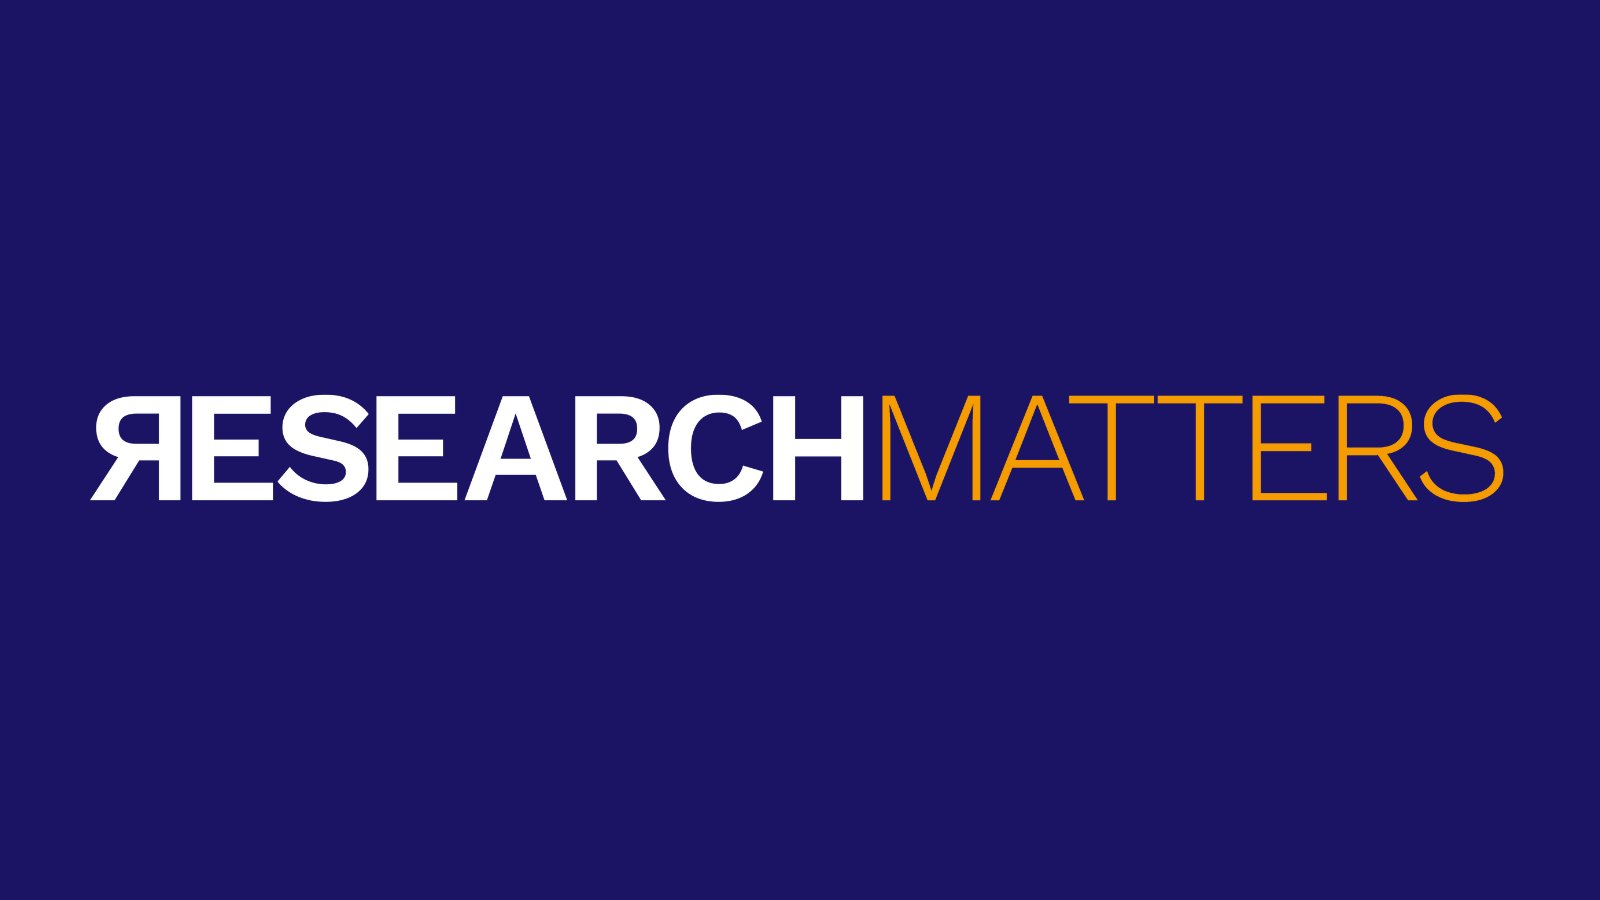 The Guild se suma a la campanya #ResearchMatters per enfortir la recerca i la innovació a la UE